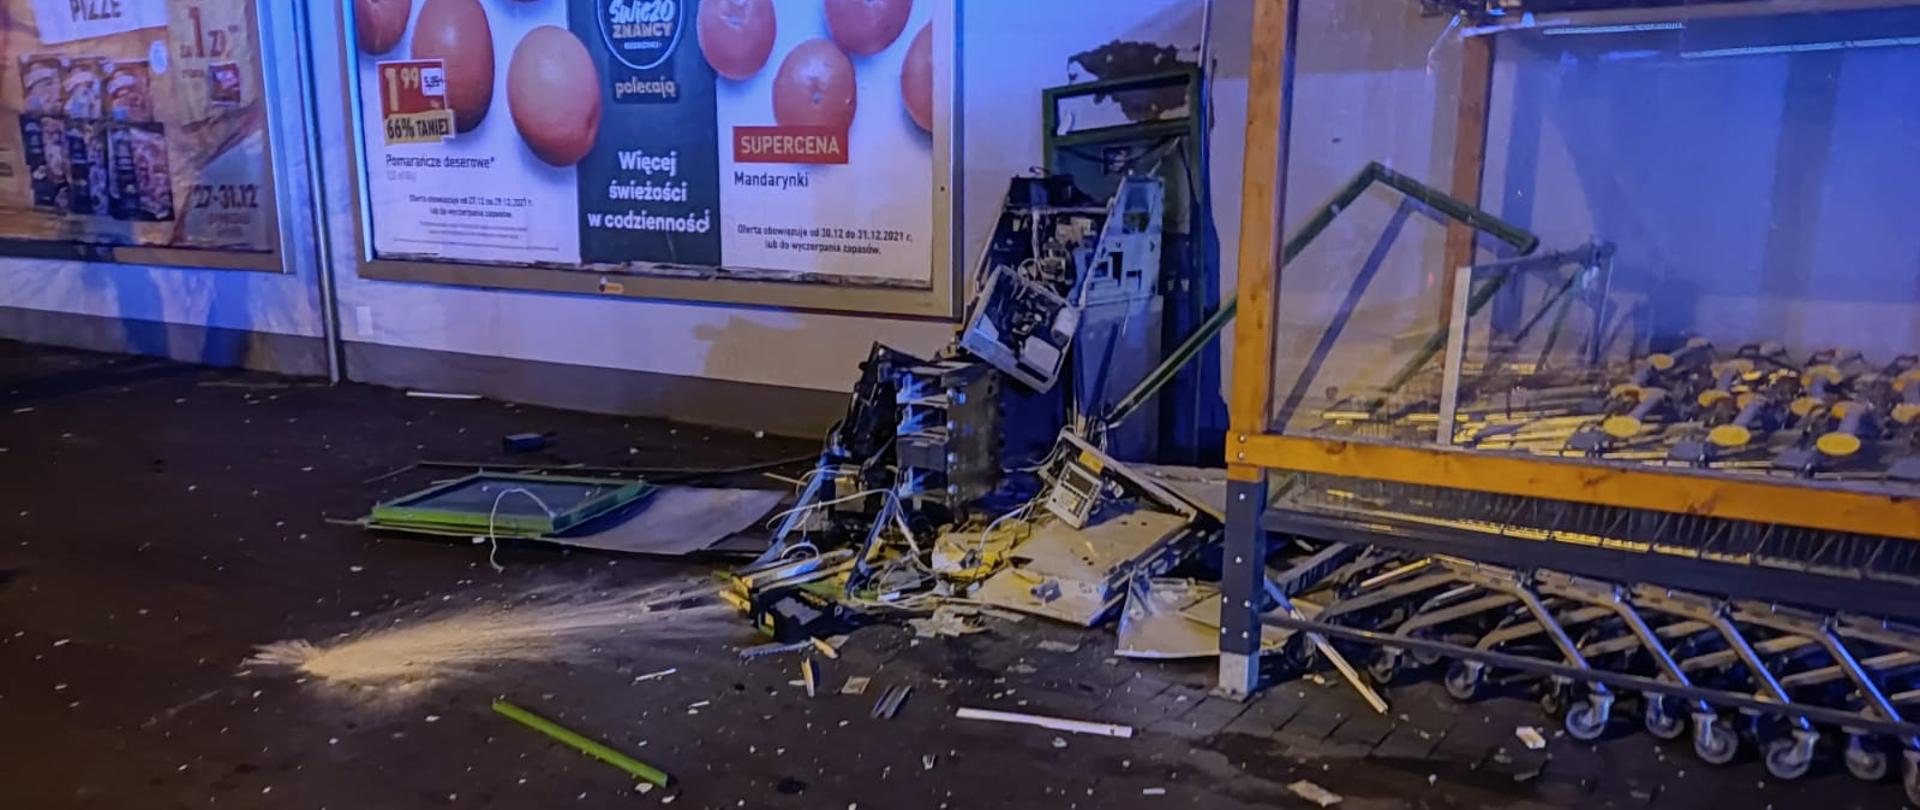 Fotografia przedstawia kompletnie zniszczony wybuchem bankomat znajdujący się przy markecie Biedronka, obok znajdują się wózki sklepowe. Na tylnej ścianie budynku widać banery reklamowe.